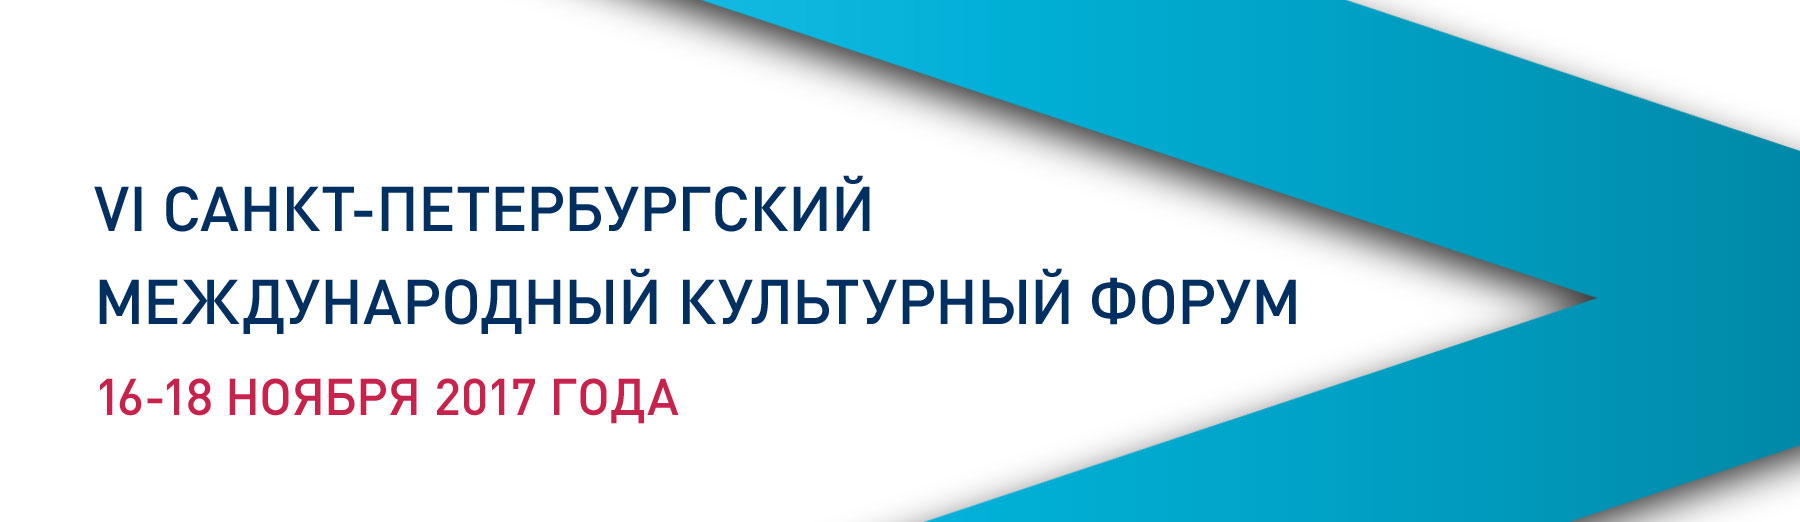 VI Санкт-Петербургский международный культурный форум пройдёт с 16 по 18 ноября 2017 года.